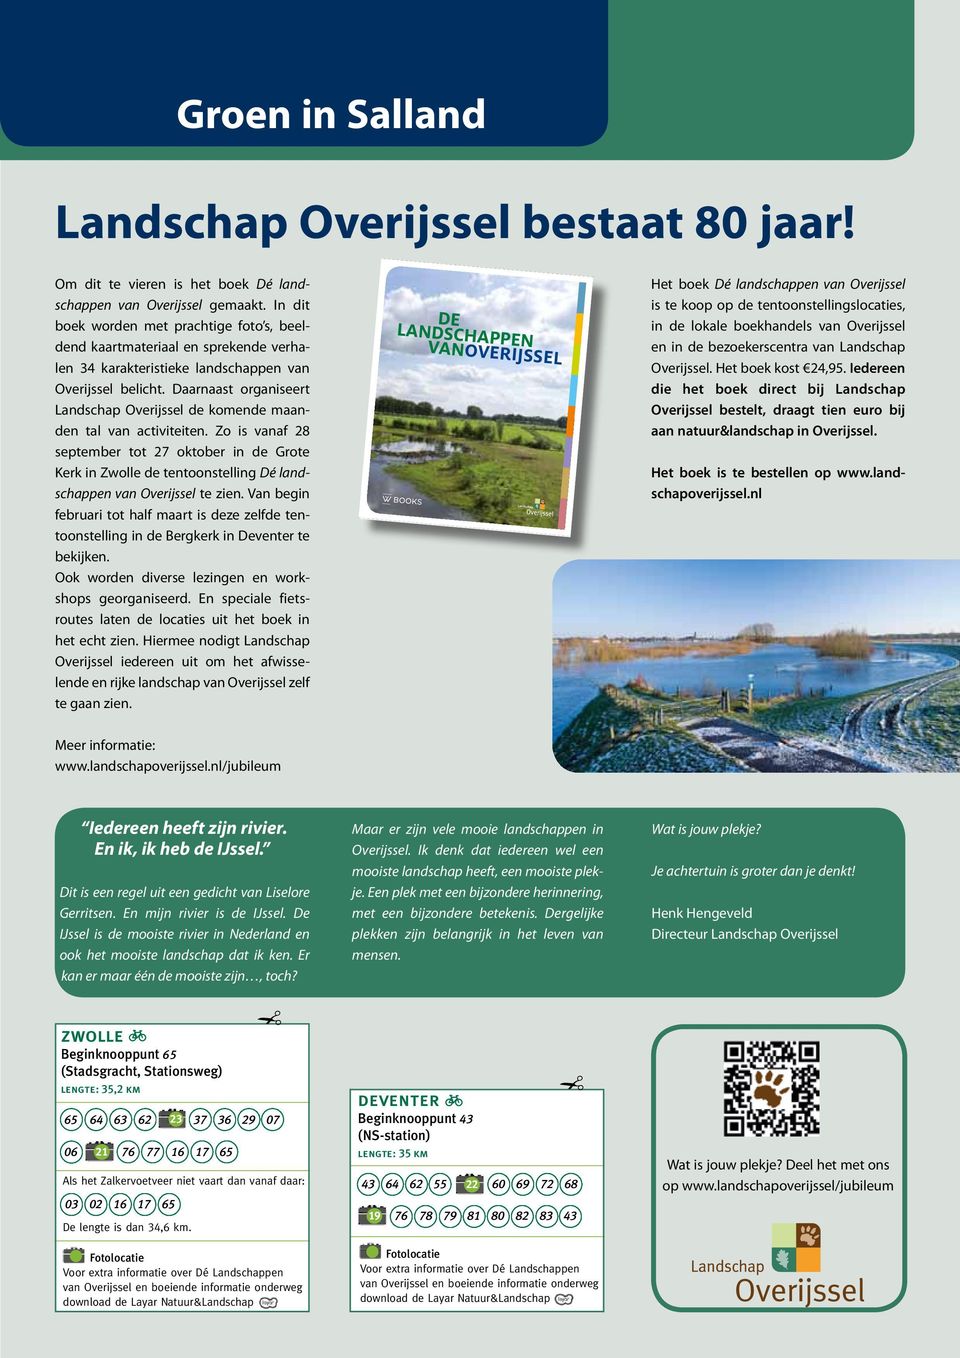 Daarnaast organiseert Landschap Overijssel de komende maanden tal van activiteiten.